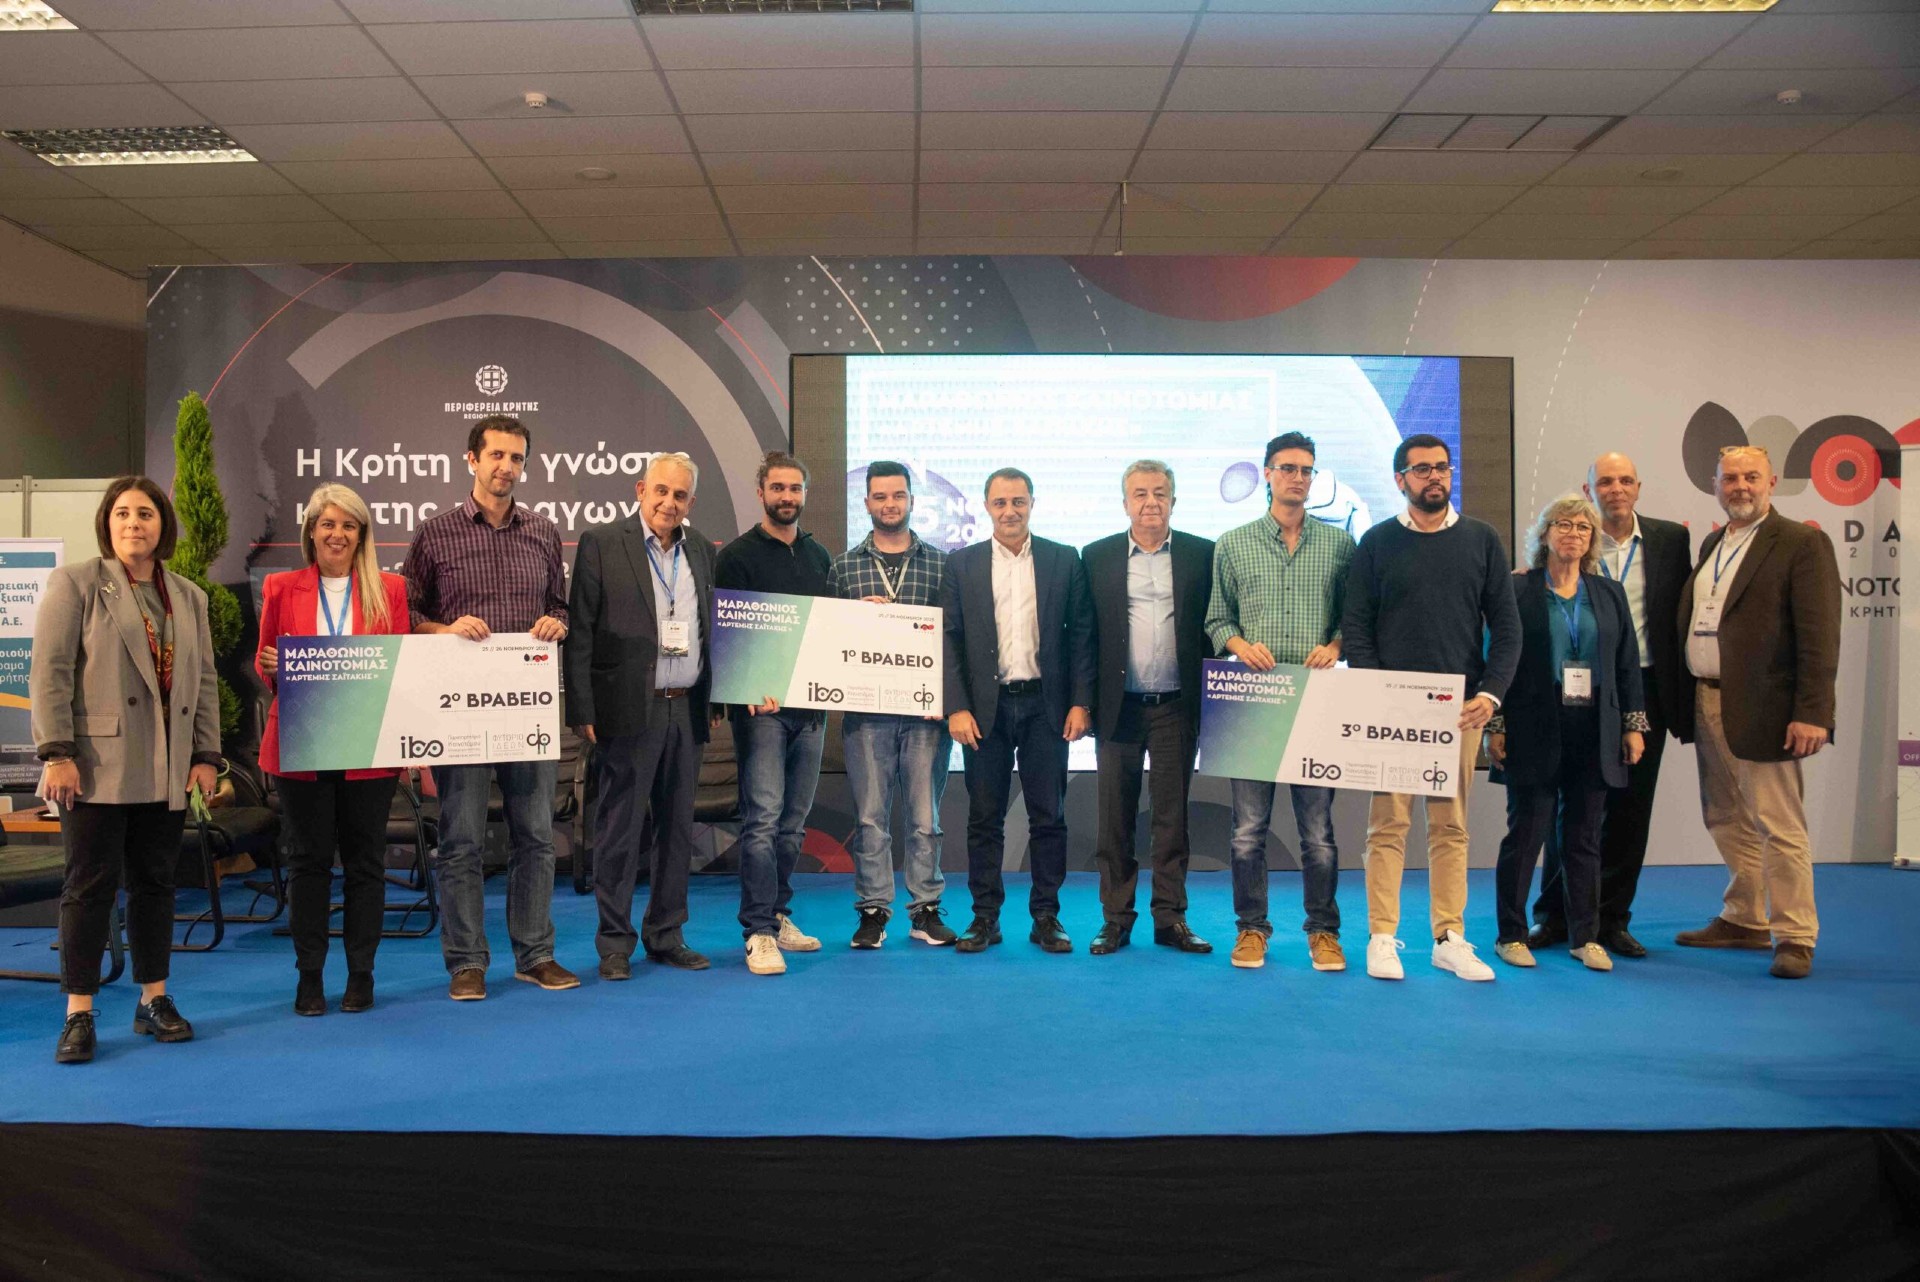  Η φοιτητική ομάδα "BioTEG" του ΕΛΜΕΠΑ απέσπασε το 1ο βραβείο στον Μαραθώνιο Καινοτομίας (Hackathon) Αρτέμης Σαϊτάκης